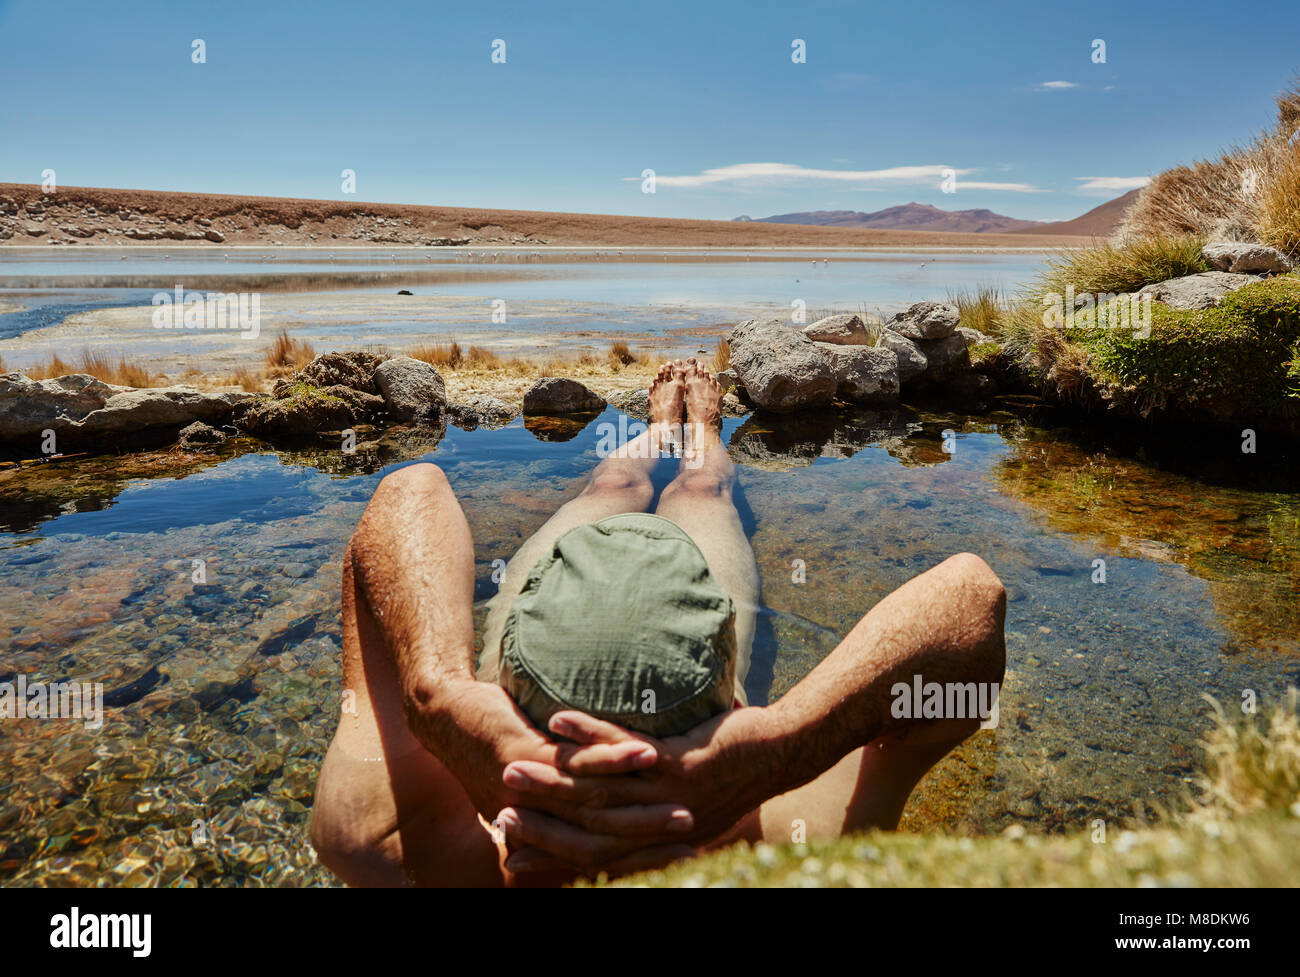 L'homme dans l'eau Détente piscine, vue arrière, Salar de Chiguana, Chiguana, Potosi, Bolivie, Amérique du Sud Banque D'Images